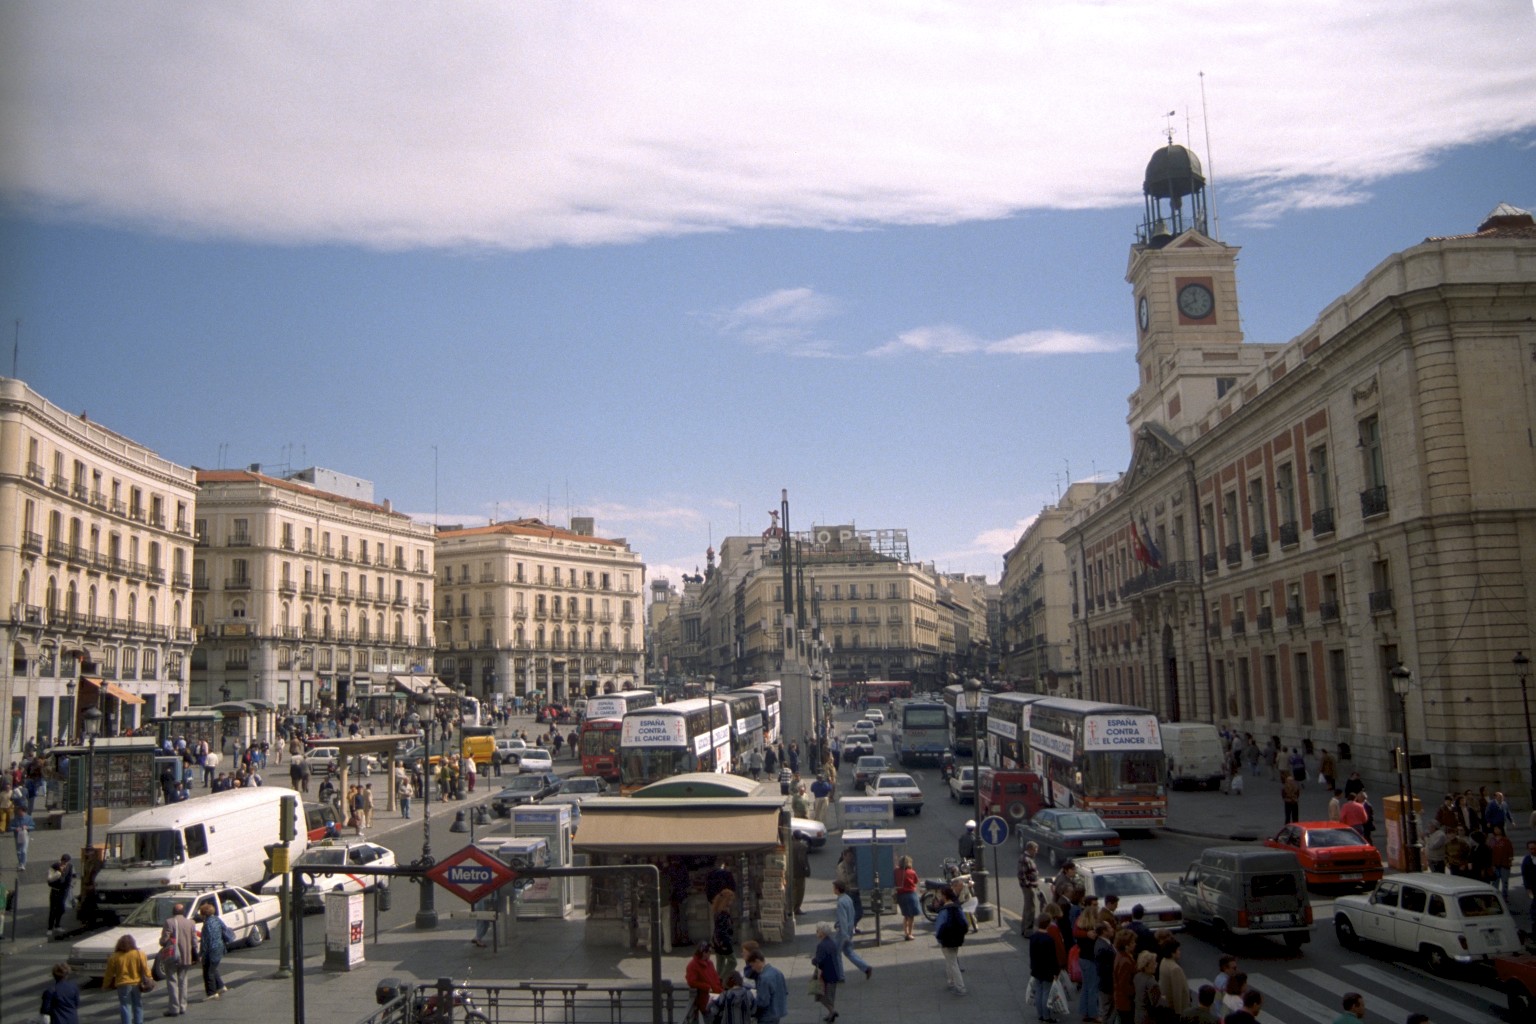 Plaza Puerta del Sol, Madrid